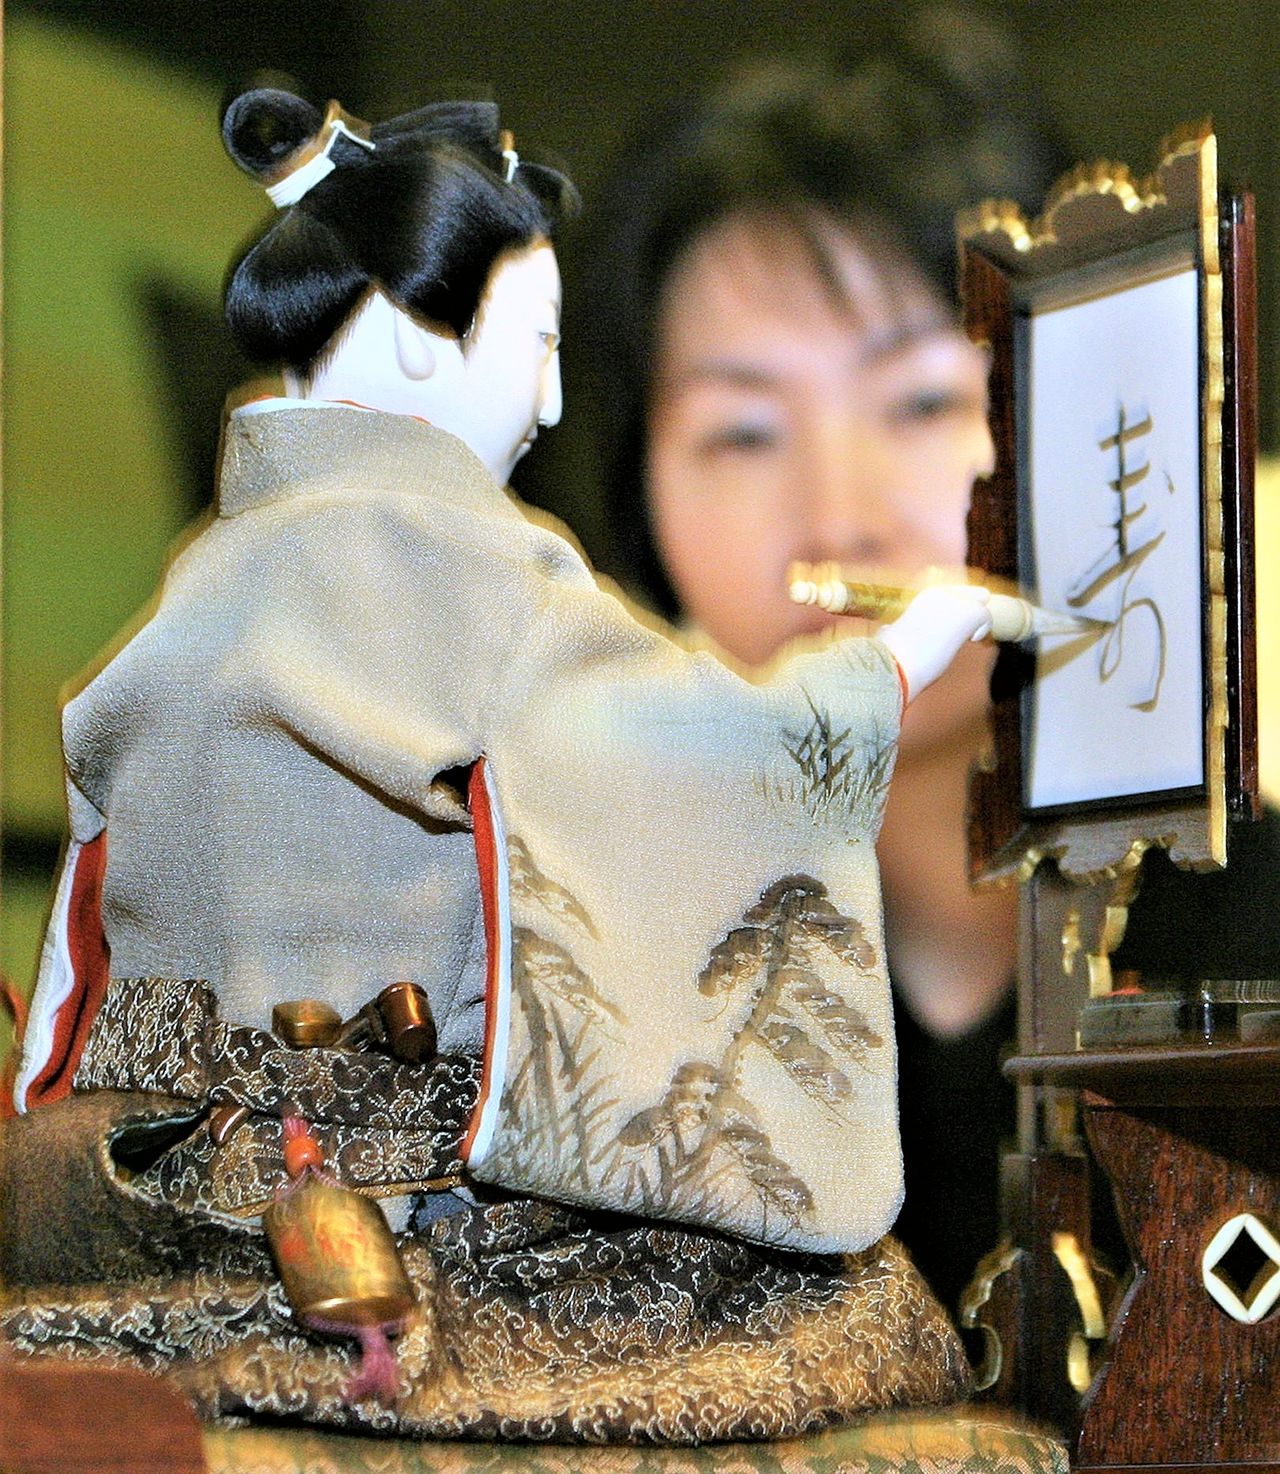 Automate calligraphe. Œuvre de la fin de l'époque d'Edo réalisée par Tanaka Hisashige, qui utilisait un dispositif à ressort pour écrire des caractères sur du papier japonais en appliquant de l'encre sur un pinceau. (Jiji)